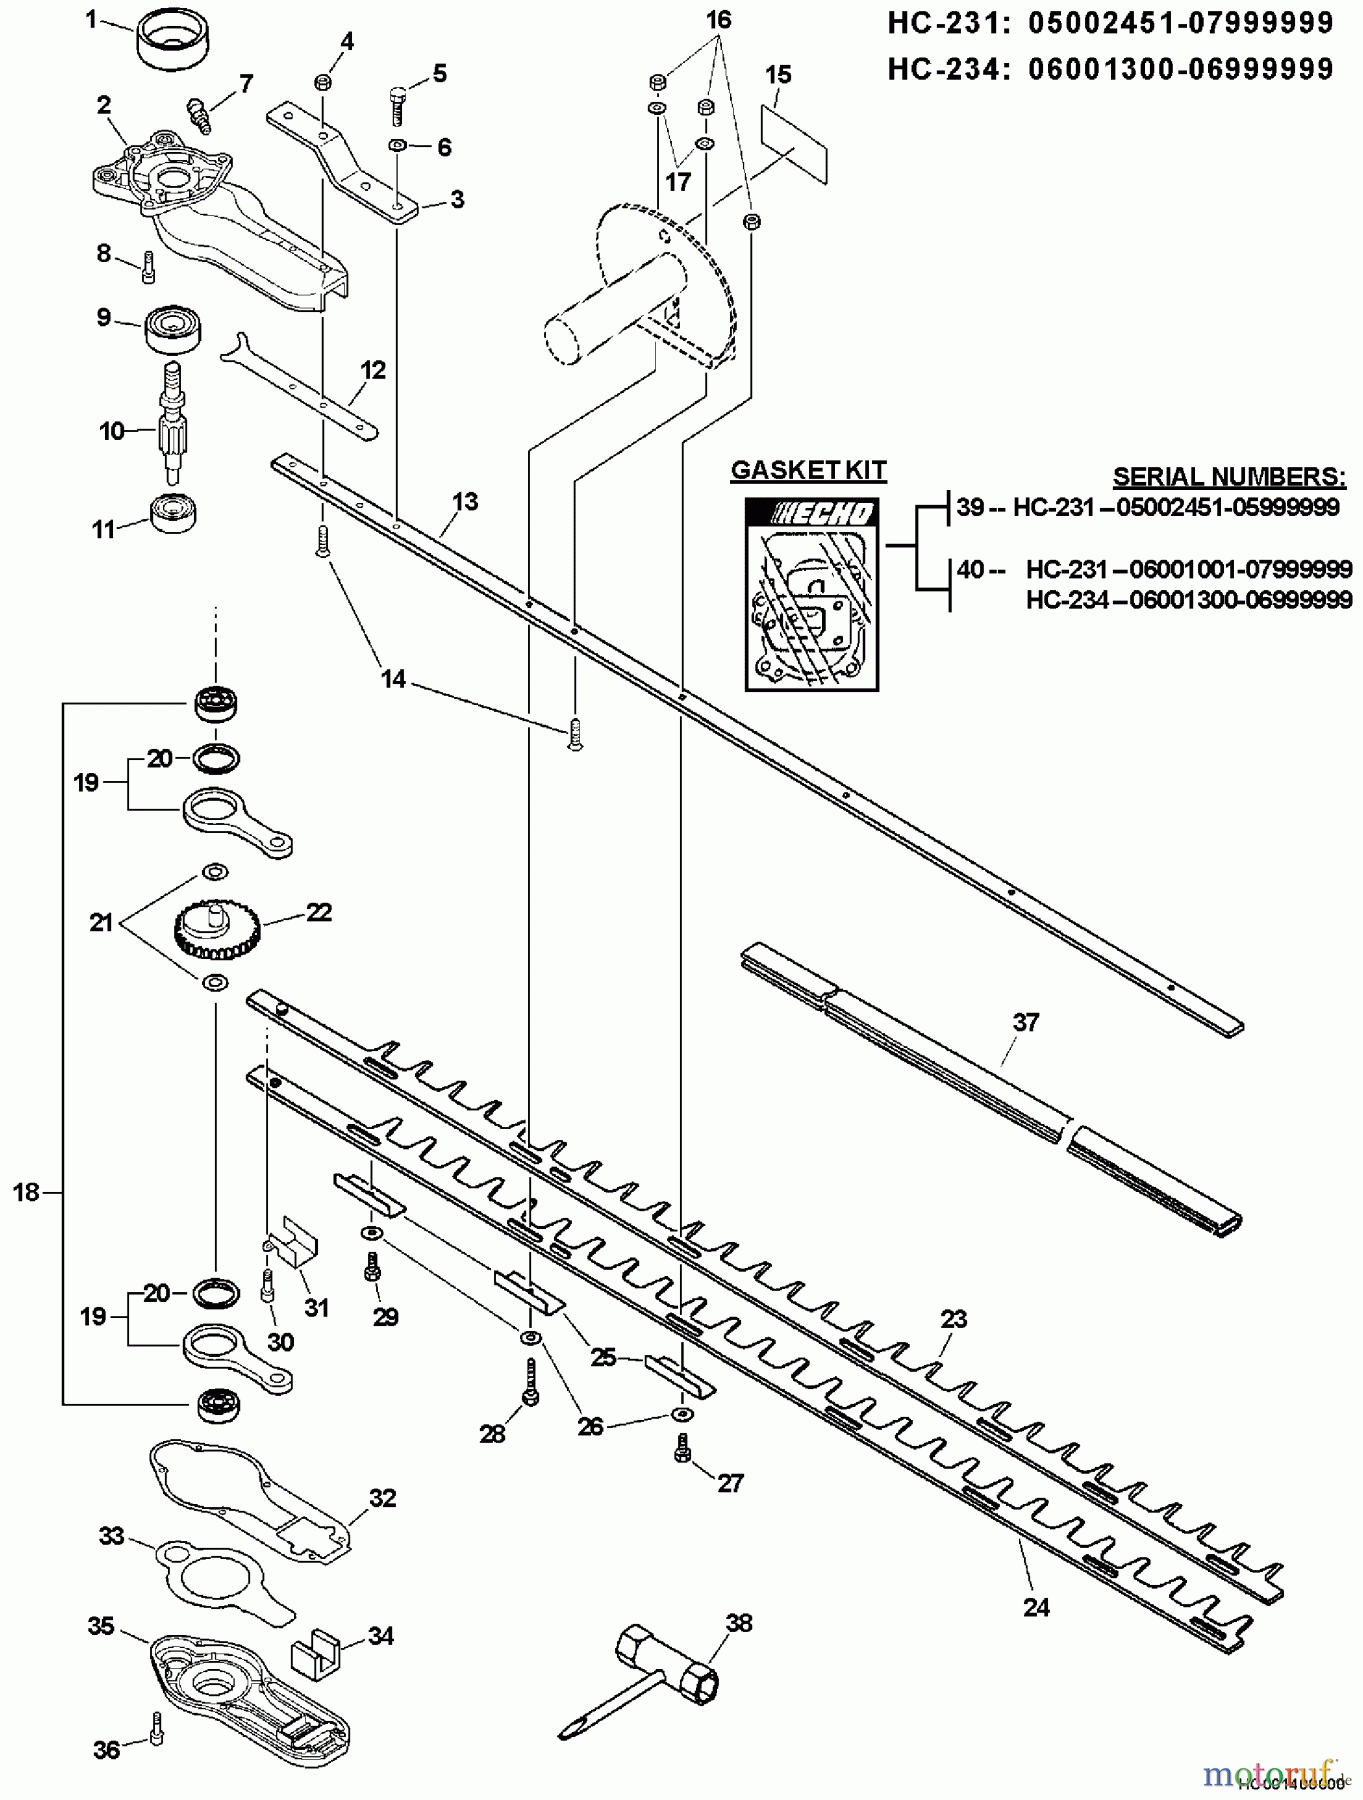  Echo Heckenscheren HC-231 - Echo Hedge Trimmer, S/N: 06001001 - 06999999 Blades, Gear Case, Side Handle, Tools